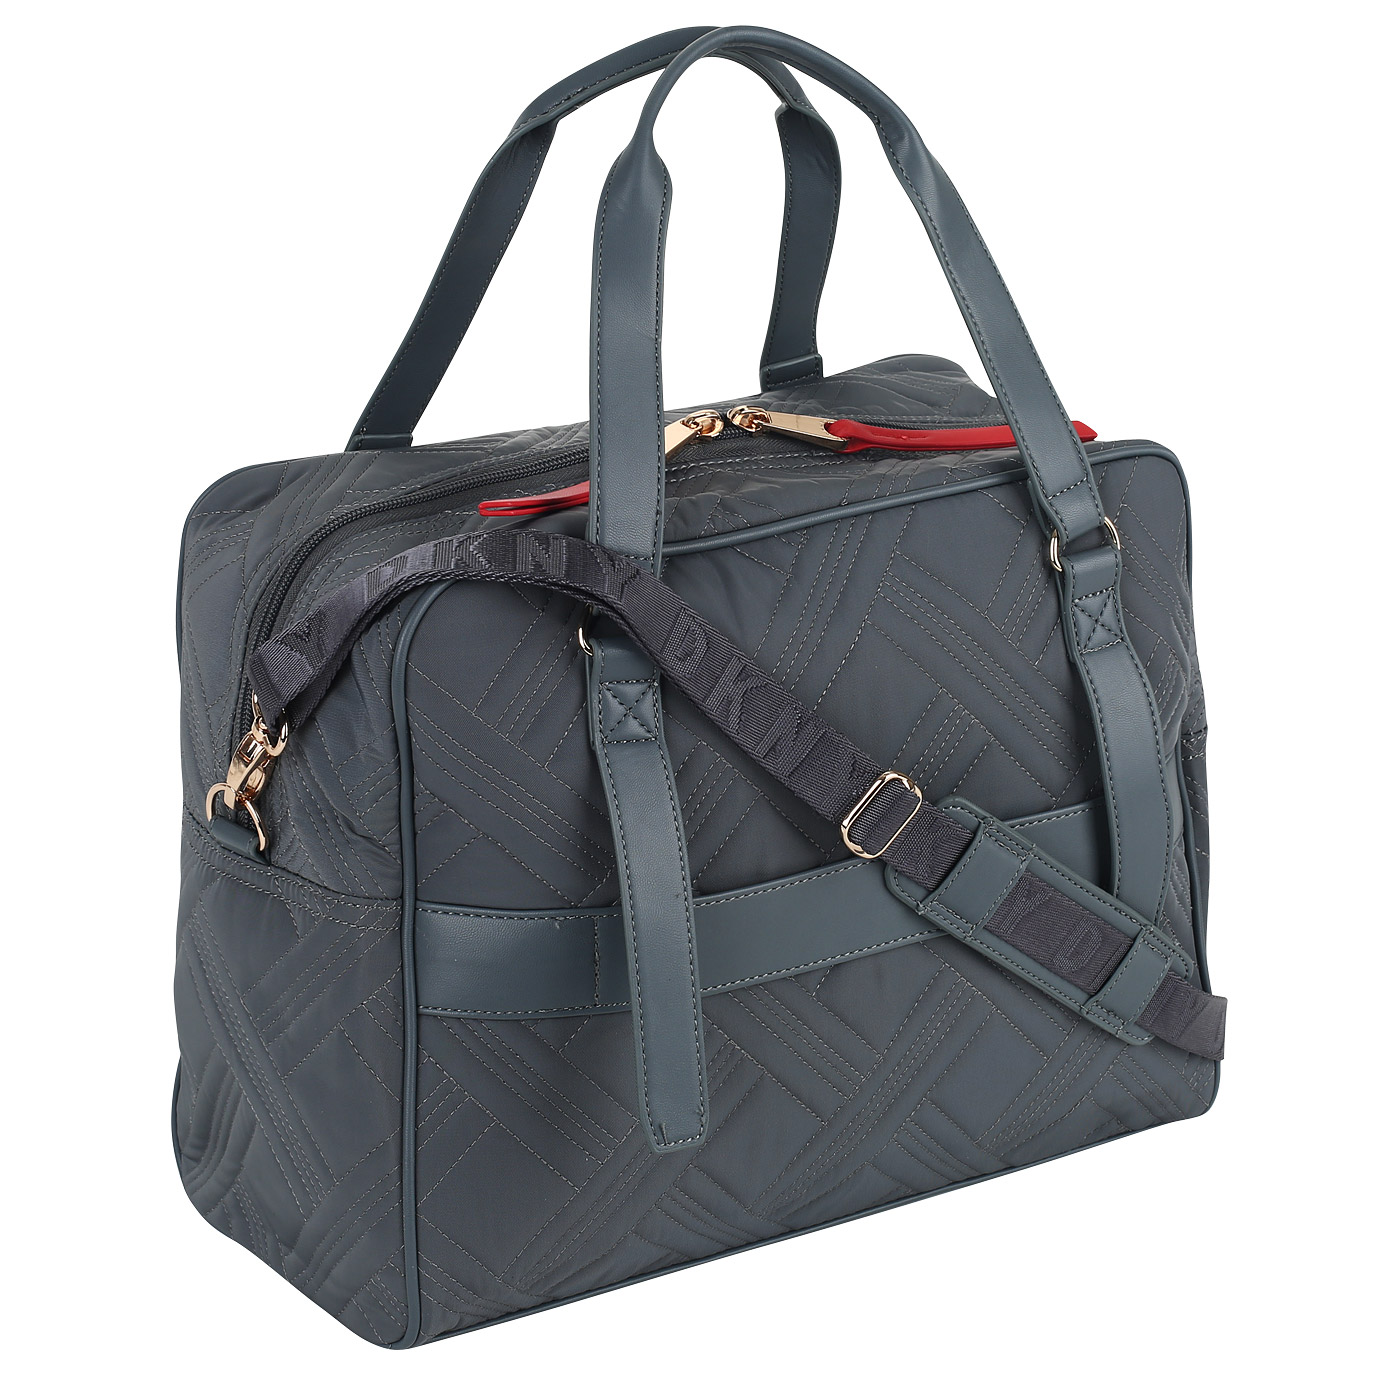 Дорожная сумка на двойной молнии DKNY DKNY-327 Aphrodesia